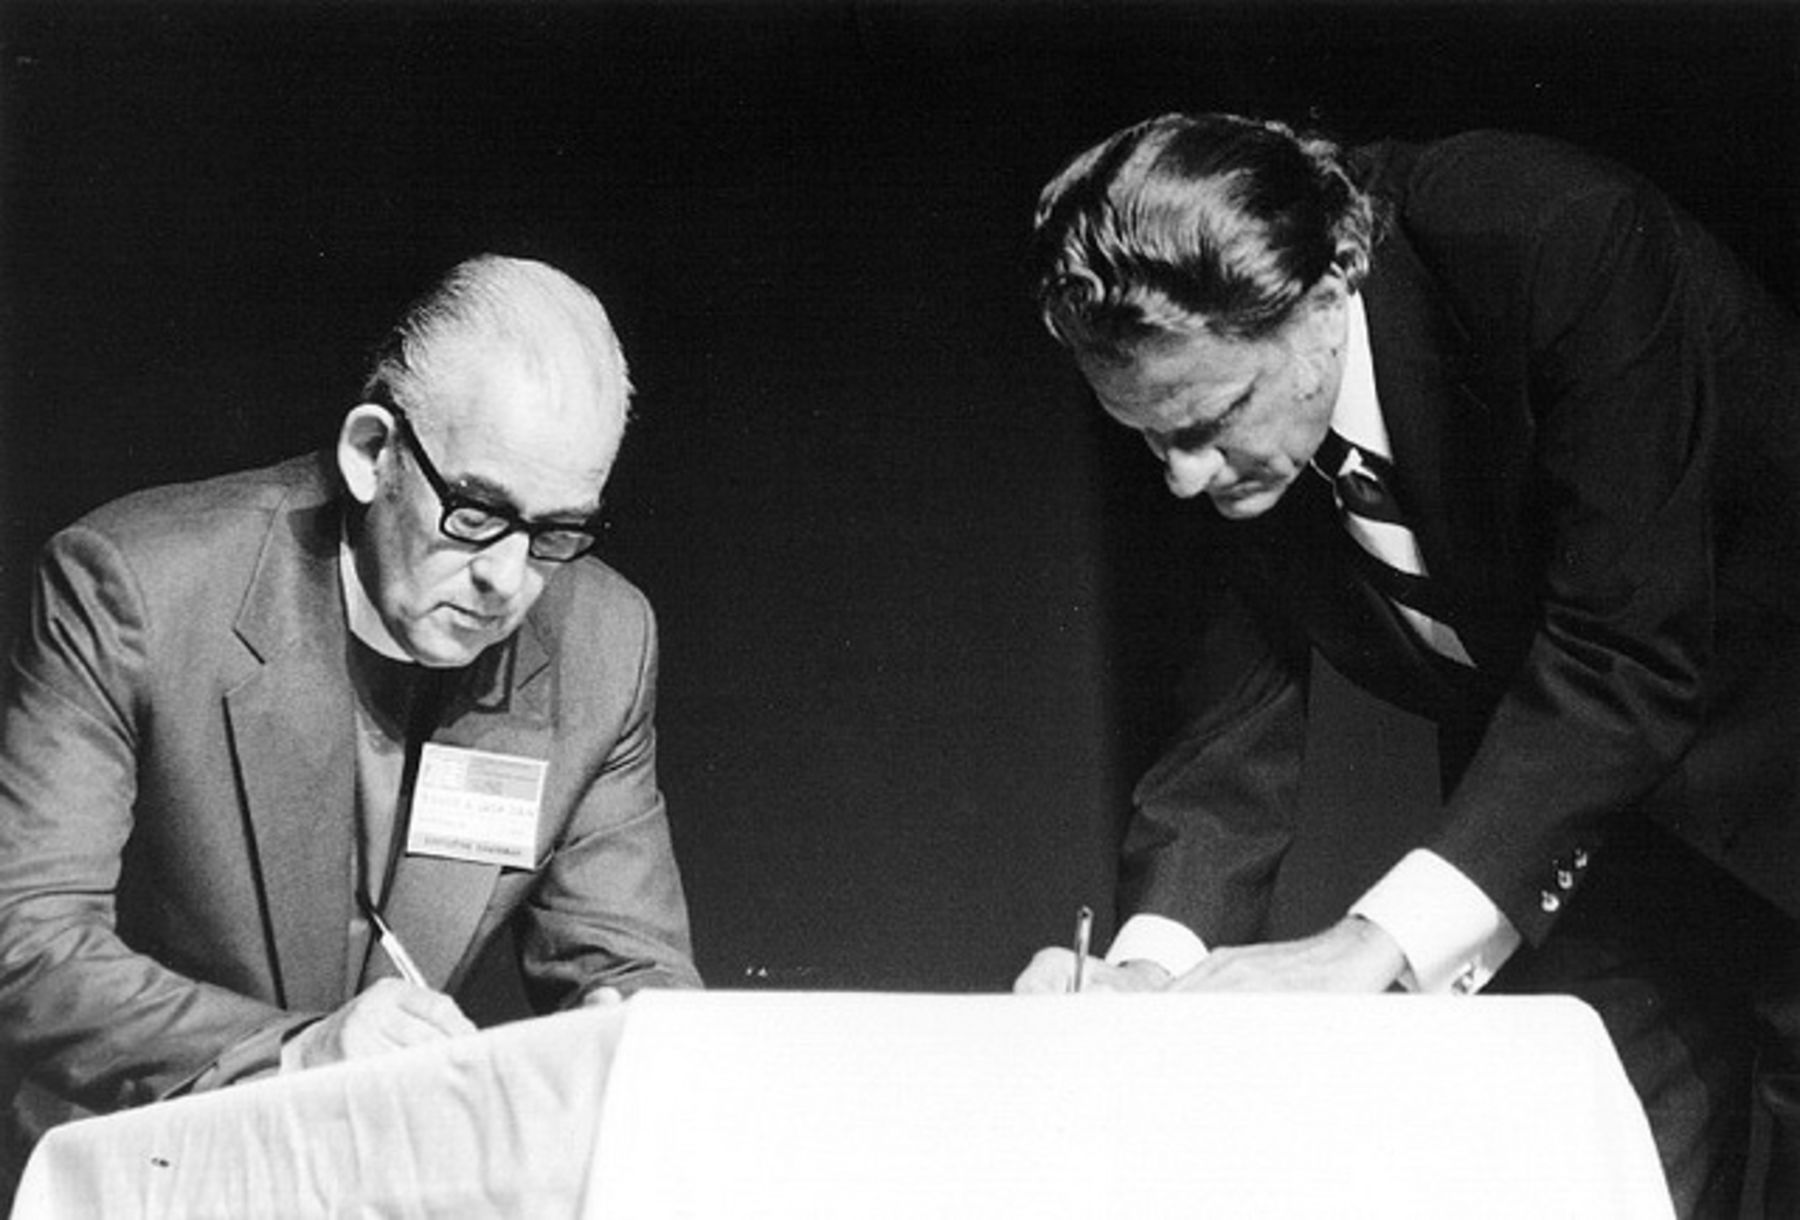 Biskop Jack Daine og Billy Graham signerte Lausannepakten i 1974, et dokument som ble født i krigen for vår tro.